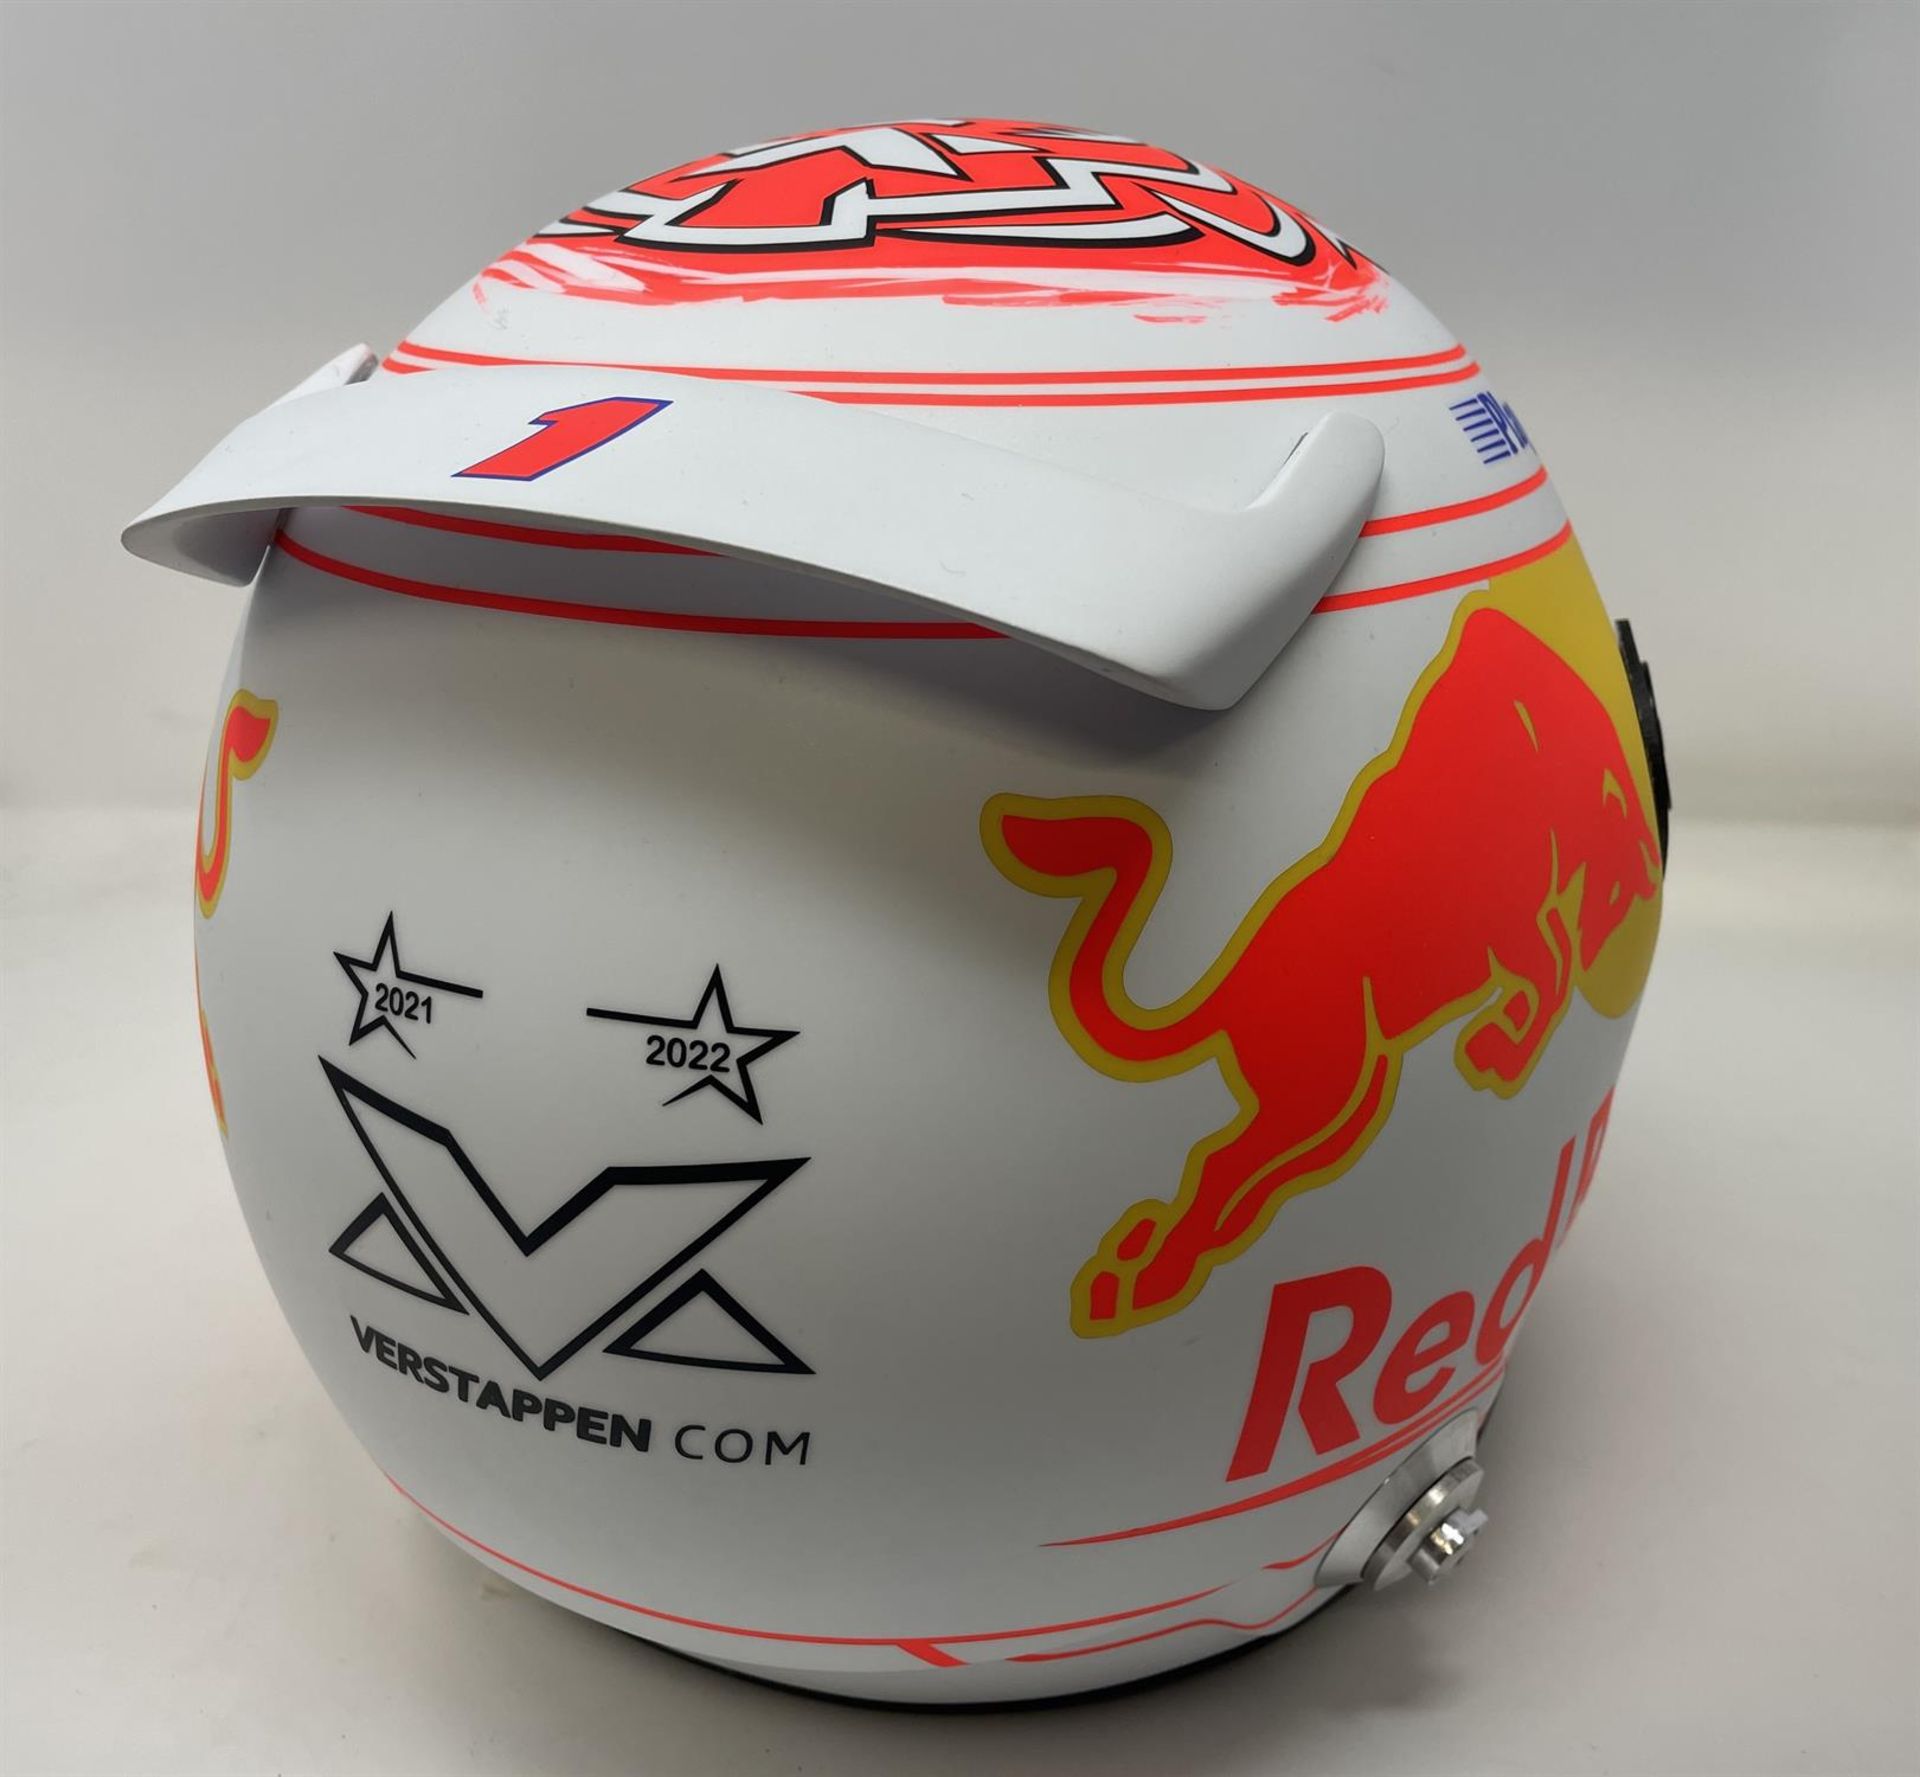 Replica Max Verstappen Japanese Grand Prix 2023 Helmet Signed to Visor - Image 3 of 10